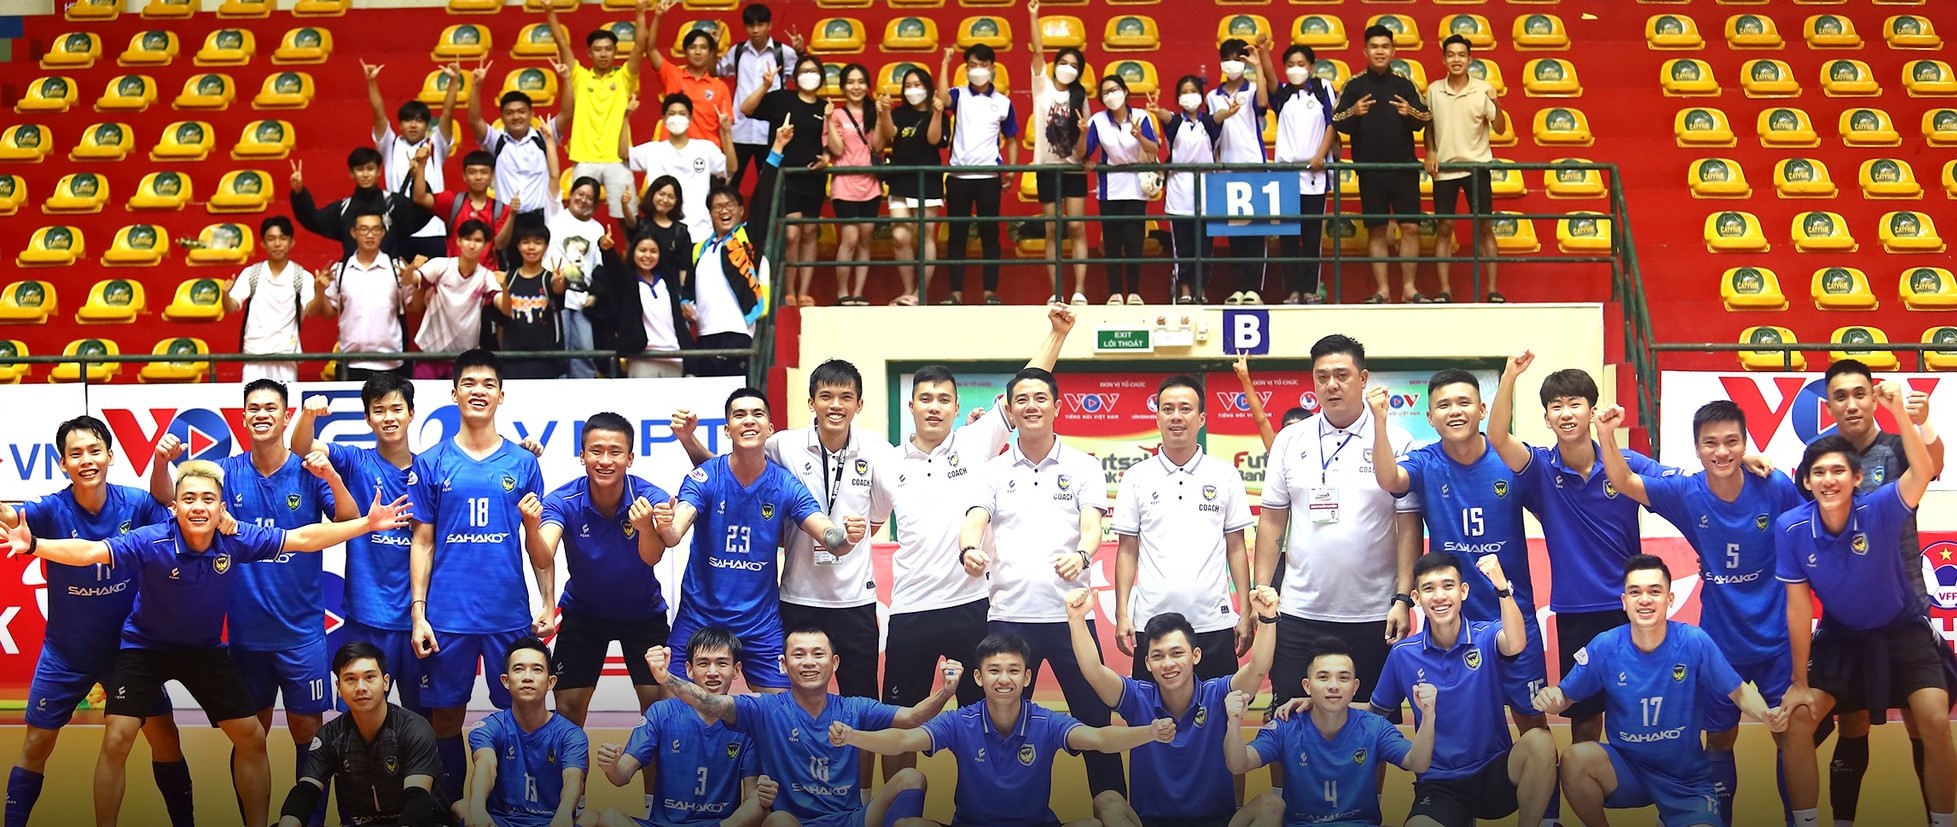 Giải futsal VĐQG có nhà vô địch mới, chấm dứt sự thống trị của Thái Sơn Nam